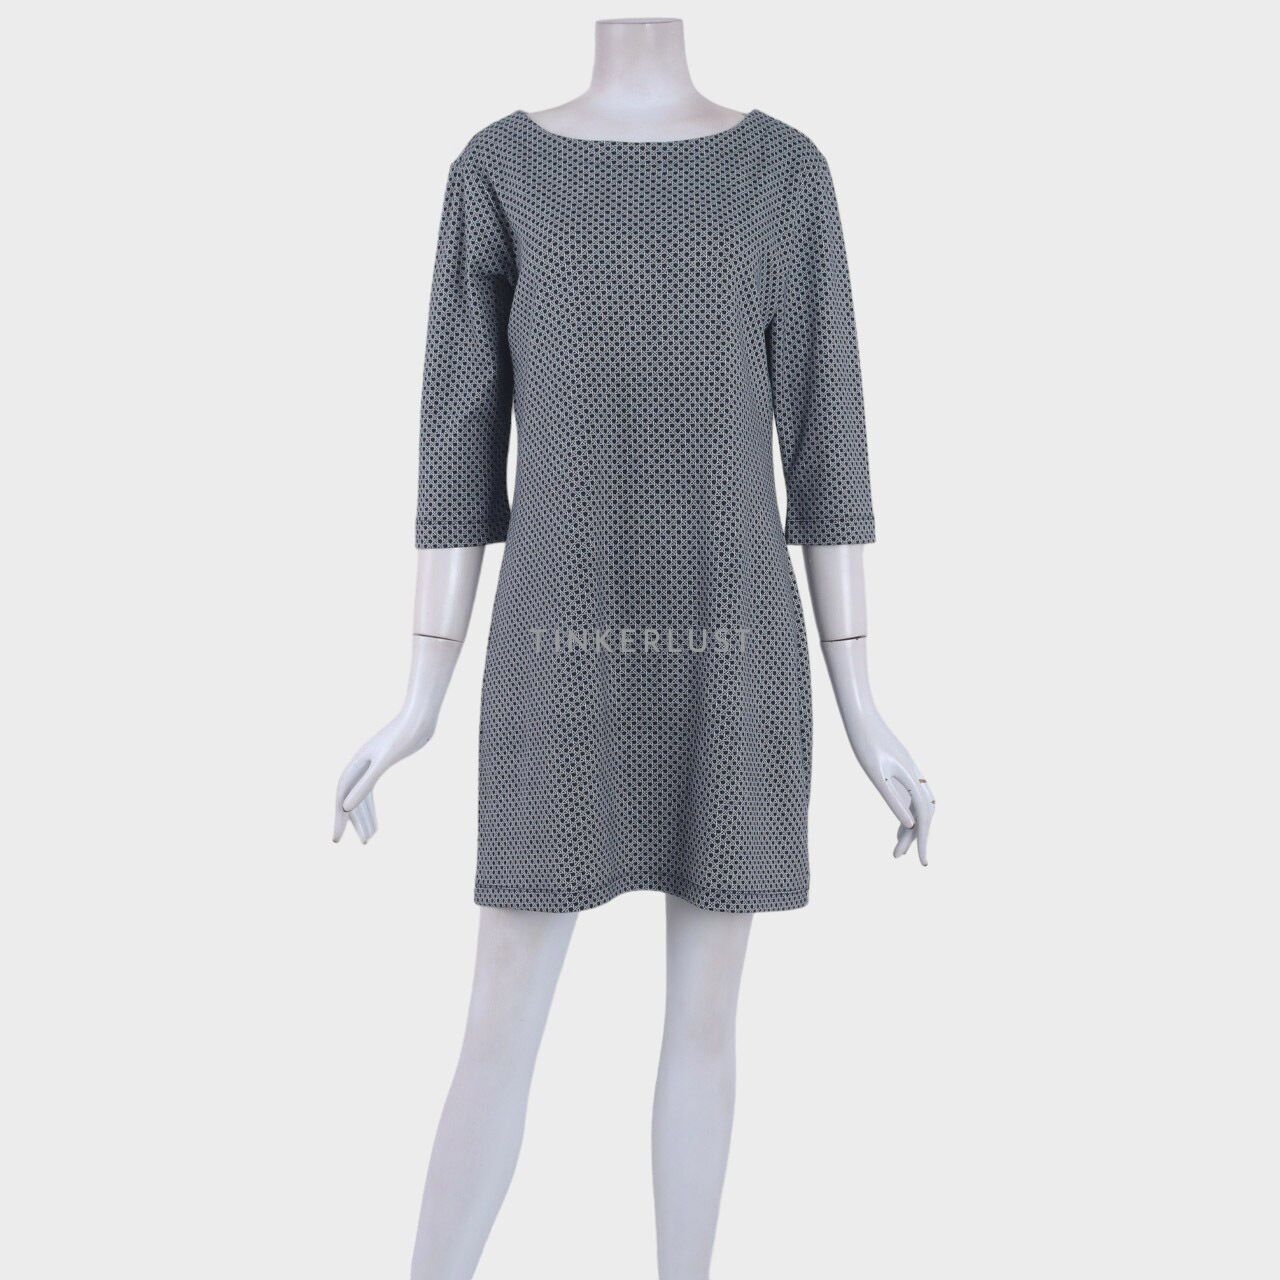 The Executive Black & White Pattern Mini Dress